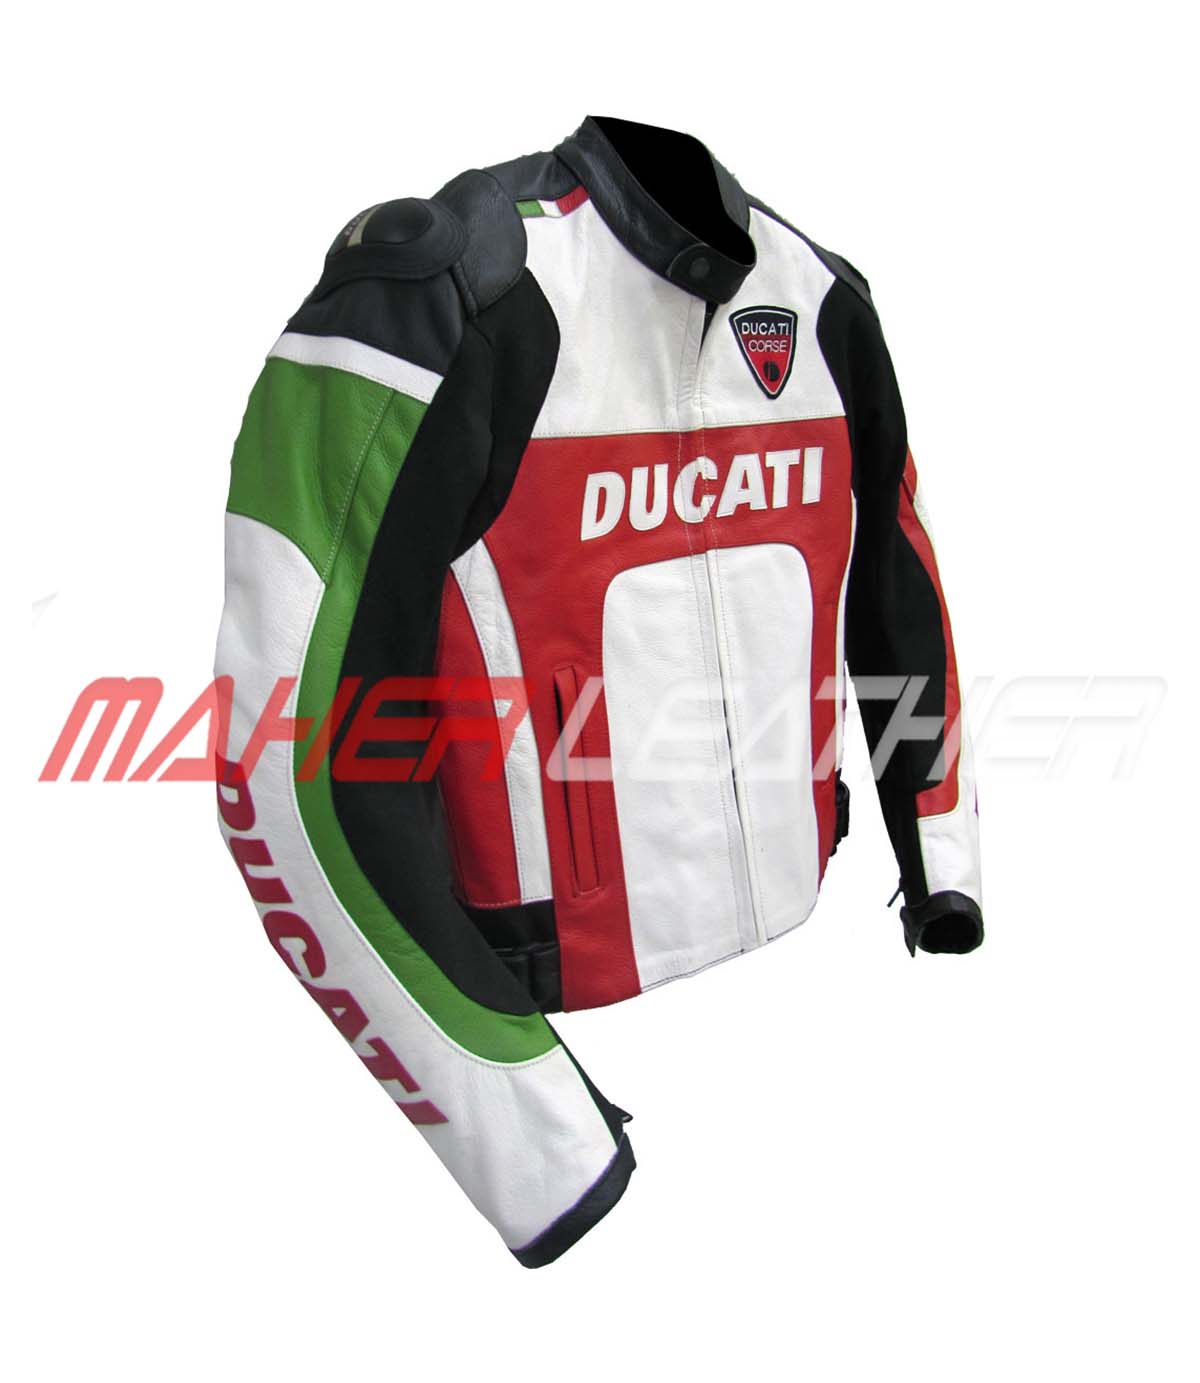 The Side look of Ducati motorcycle jacket